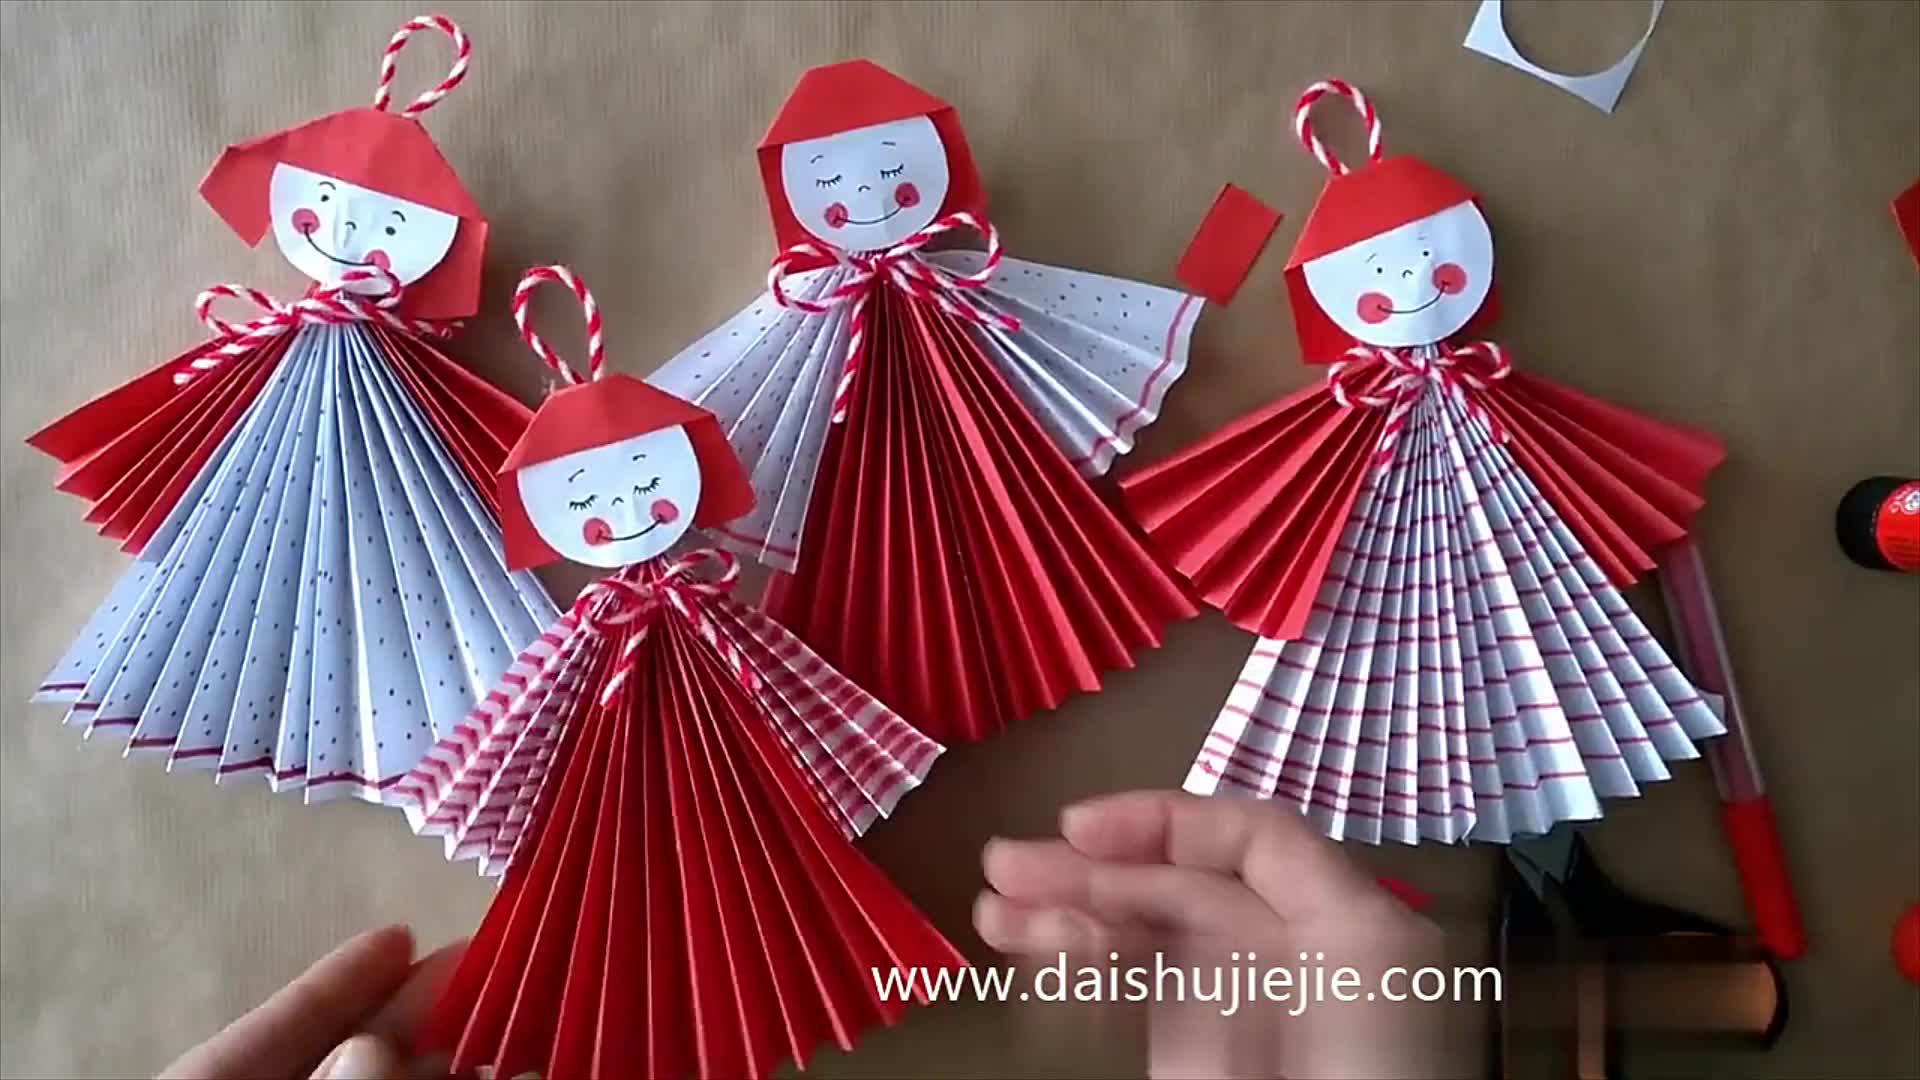 怎样用纸折娃娃?图片